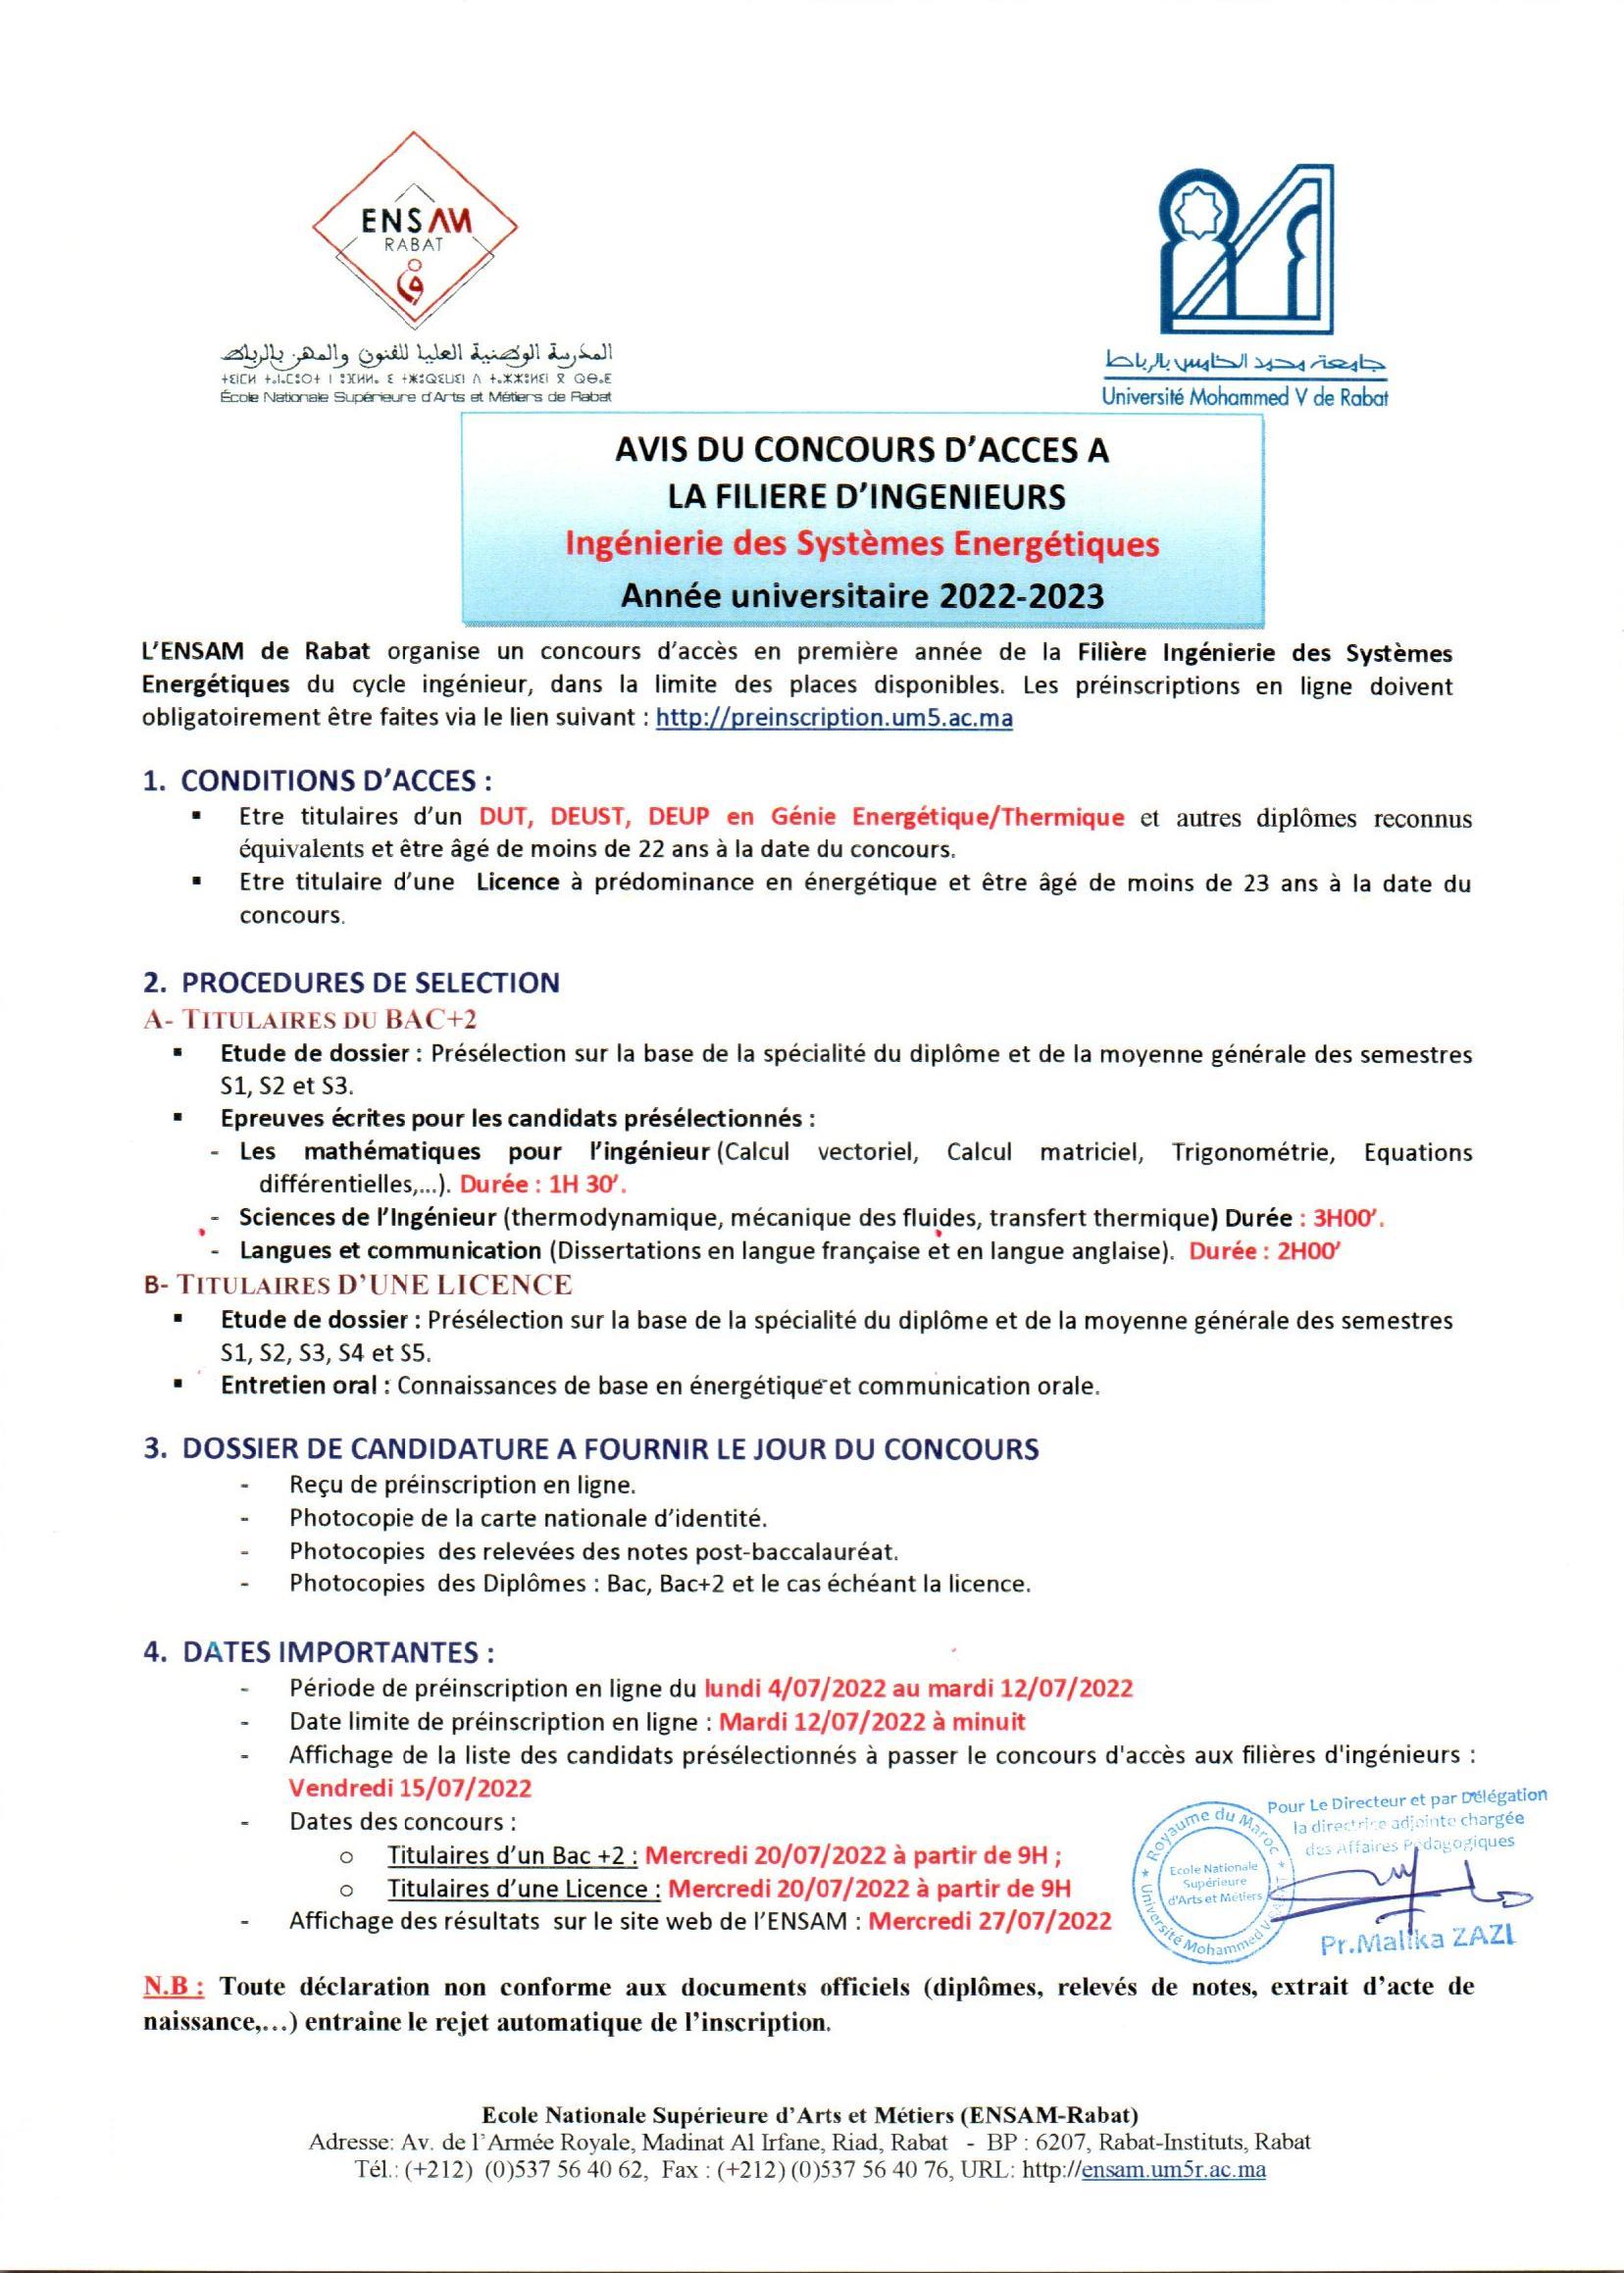 ENSAM Rabat concours 1ere année ingénieure 2022 2023